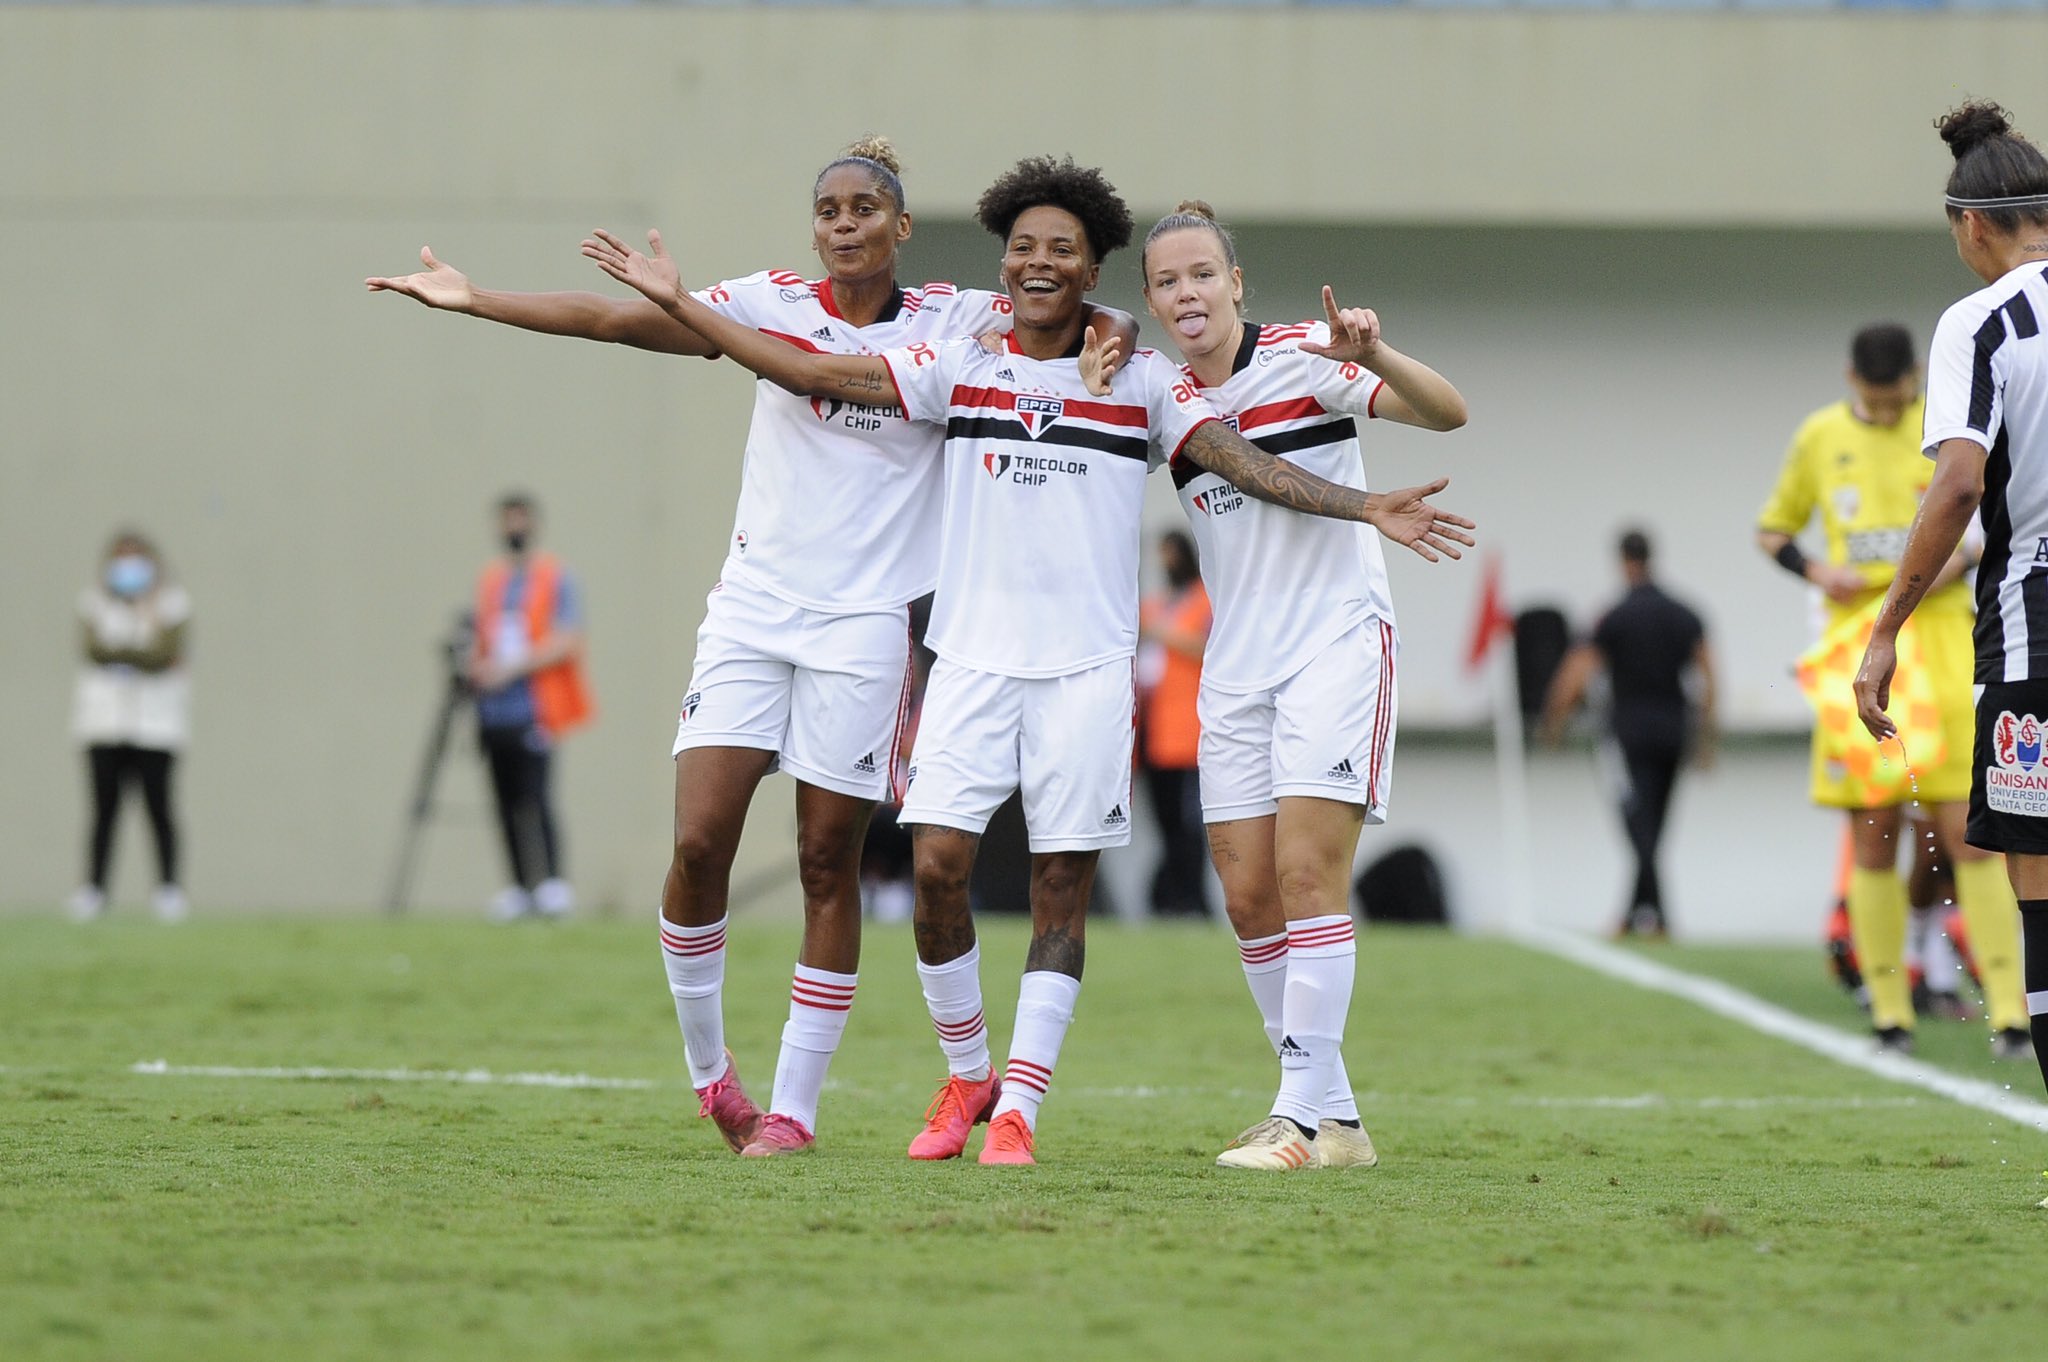 Tricolor vence o Corinthians e avança à final do Paulista Feminino